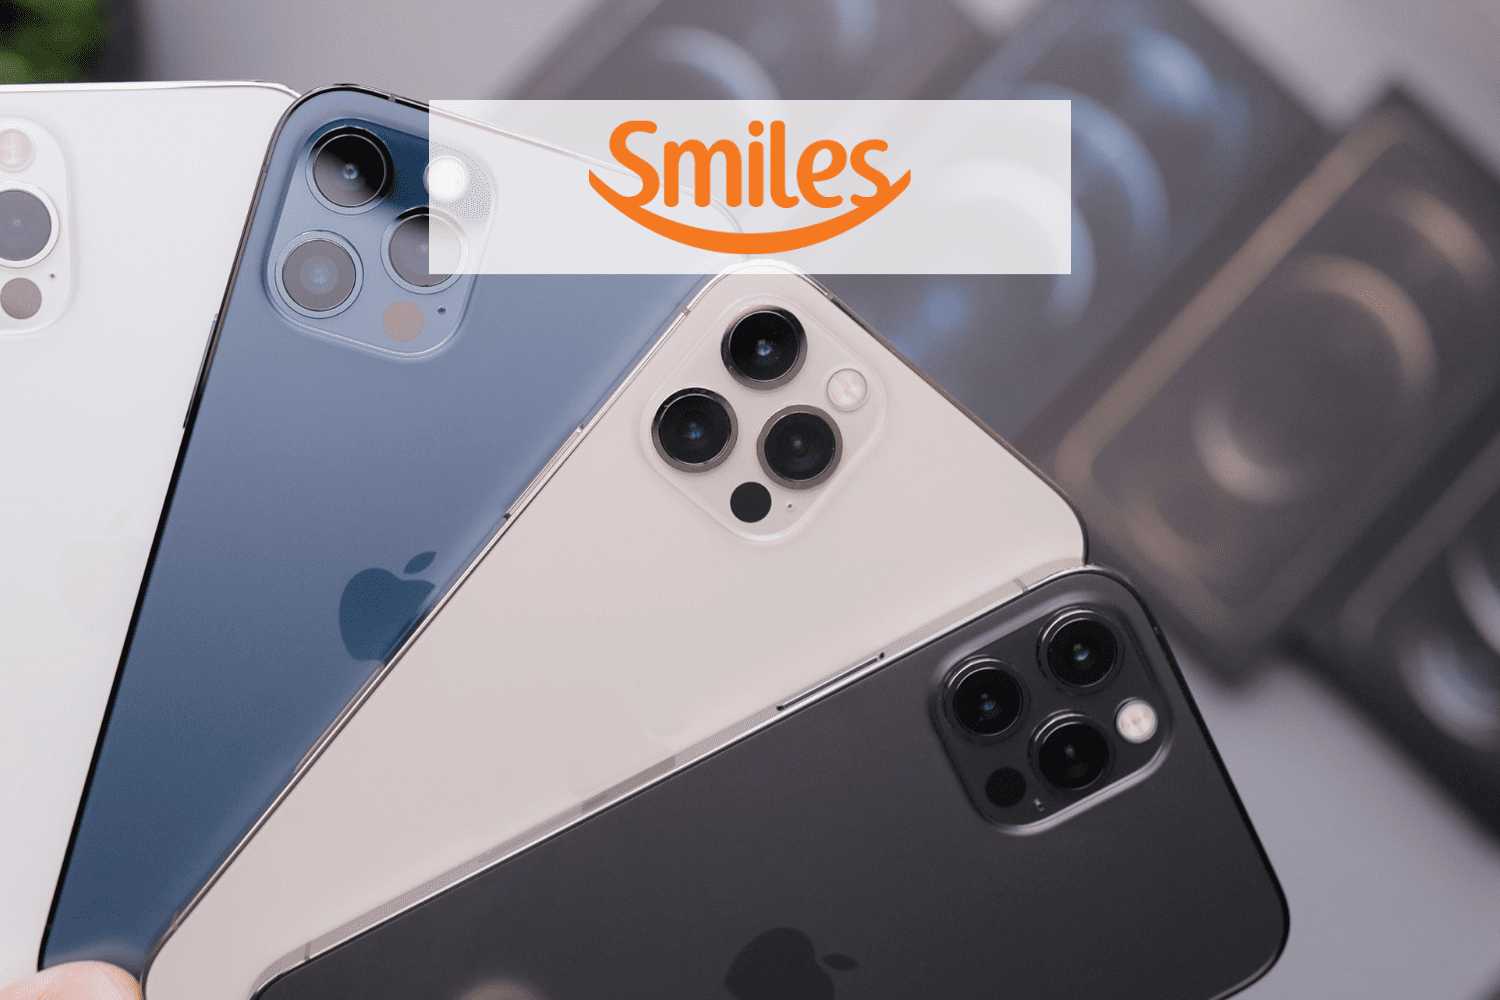 iphones com logo smiles 13 pontos smiles